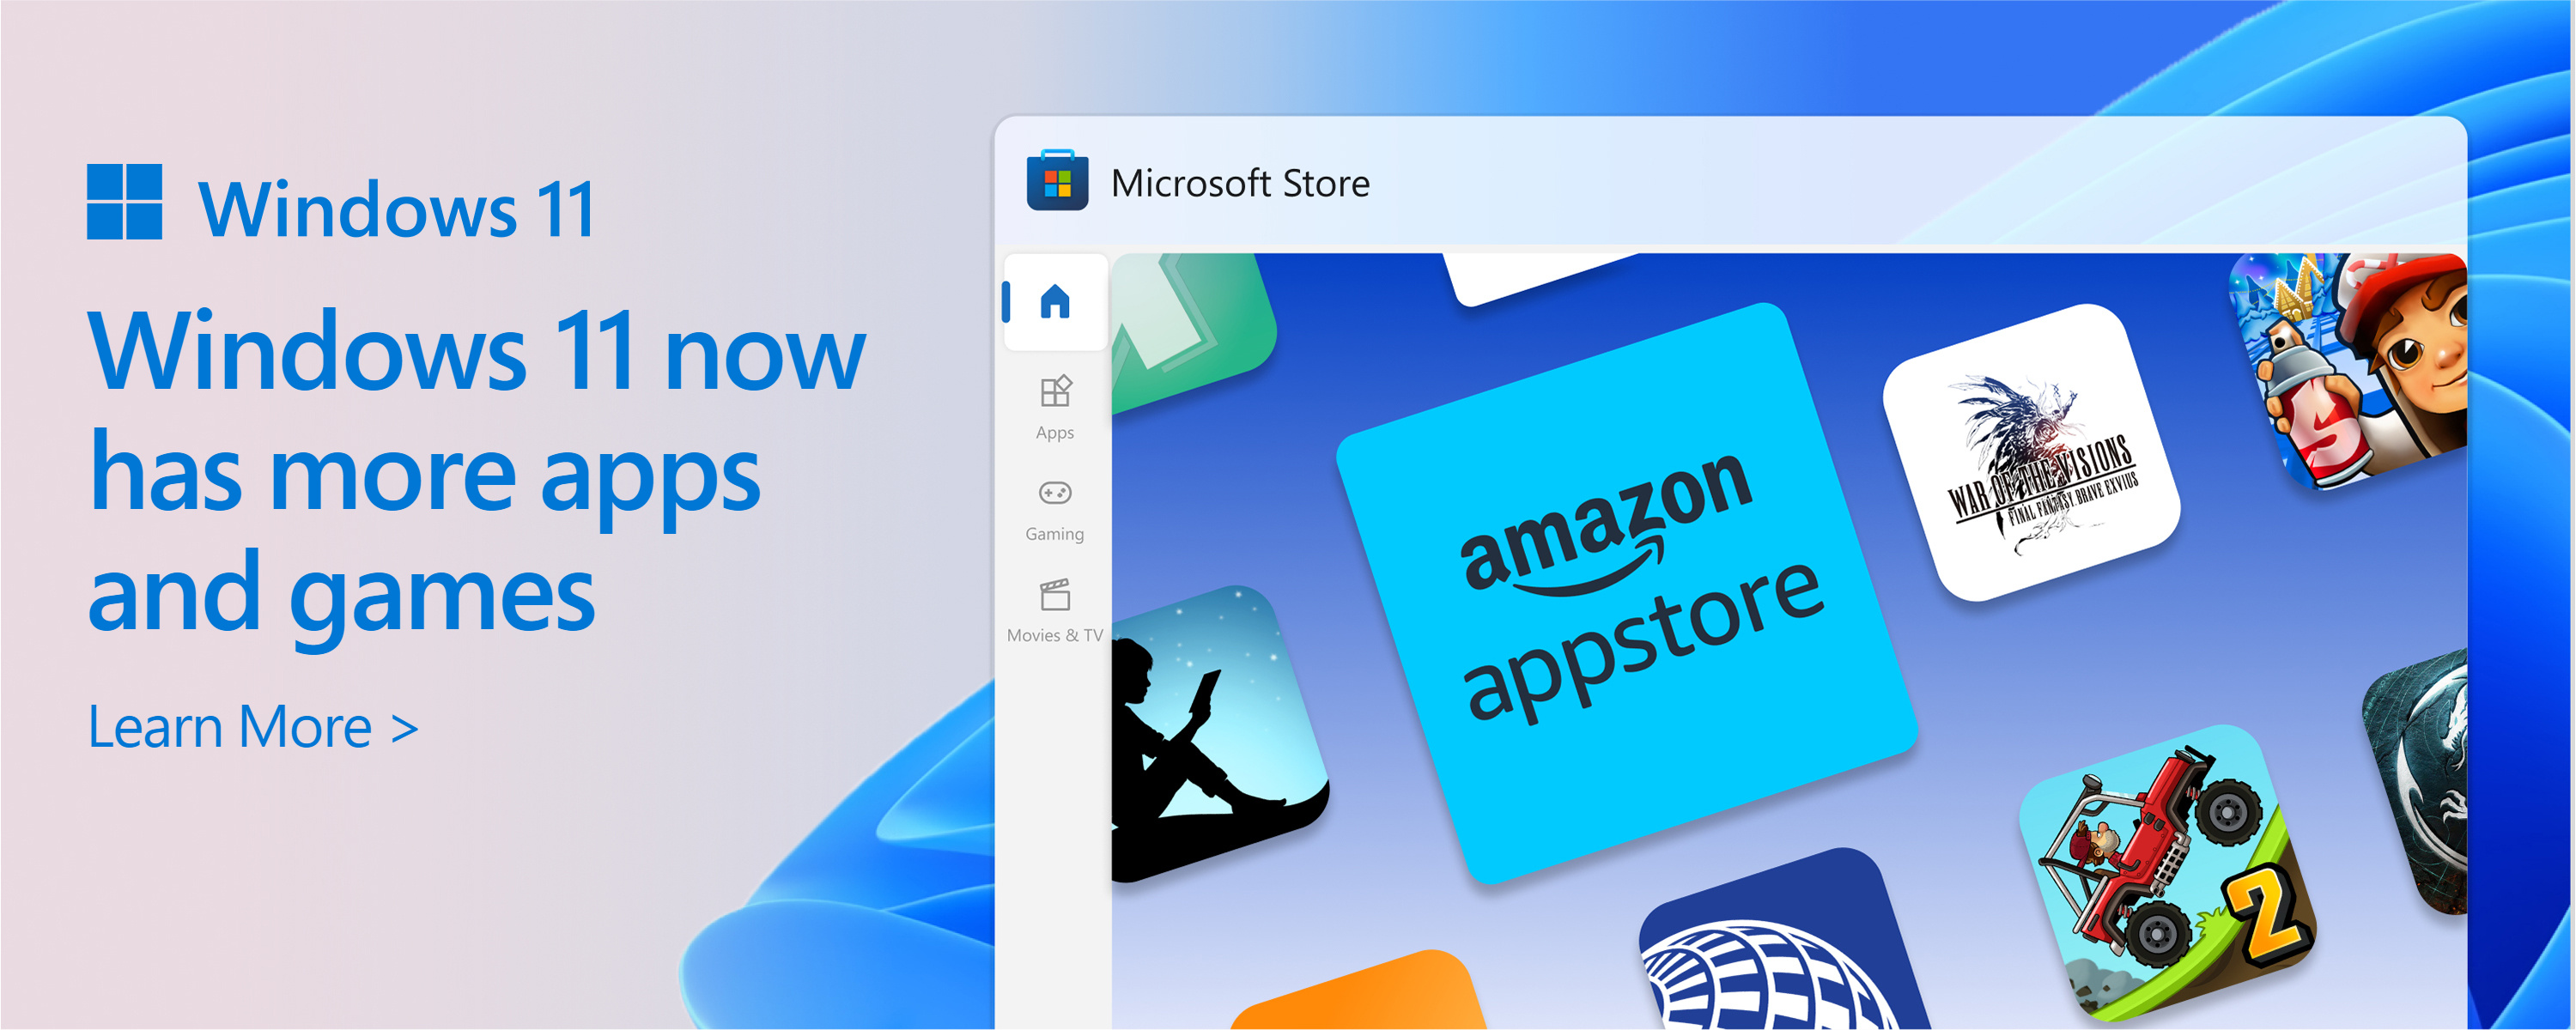 Снимок экрана Microsoft Store с текстом: каталог Microsoft Store растет. Windows 11 предоставляет вам больше приложений и игр, которые вам нужны.